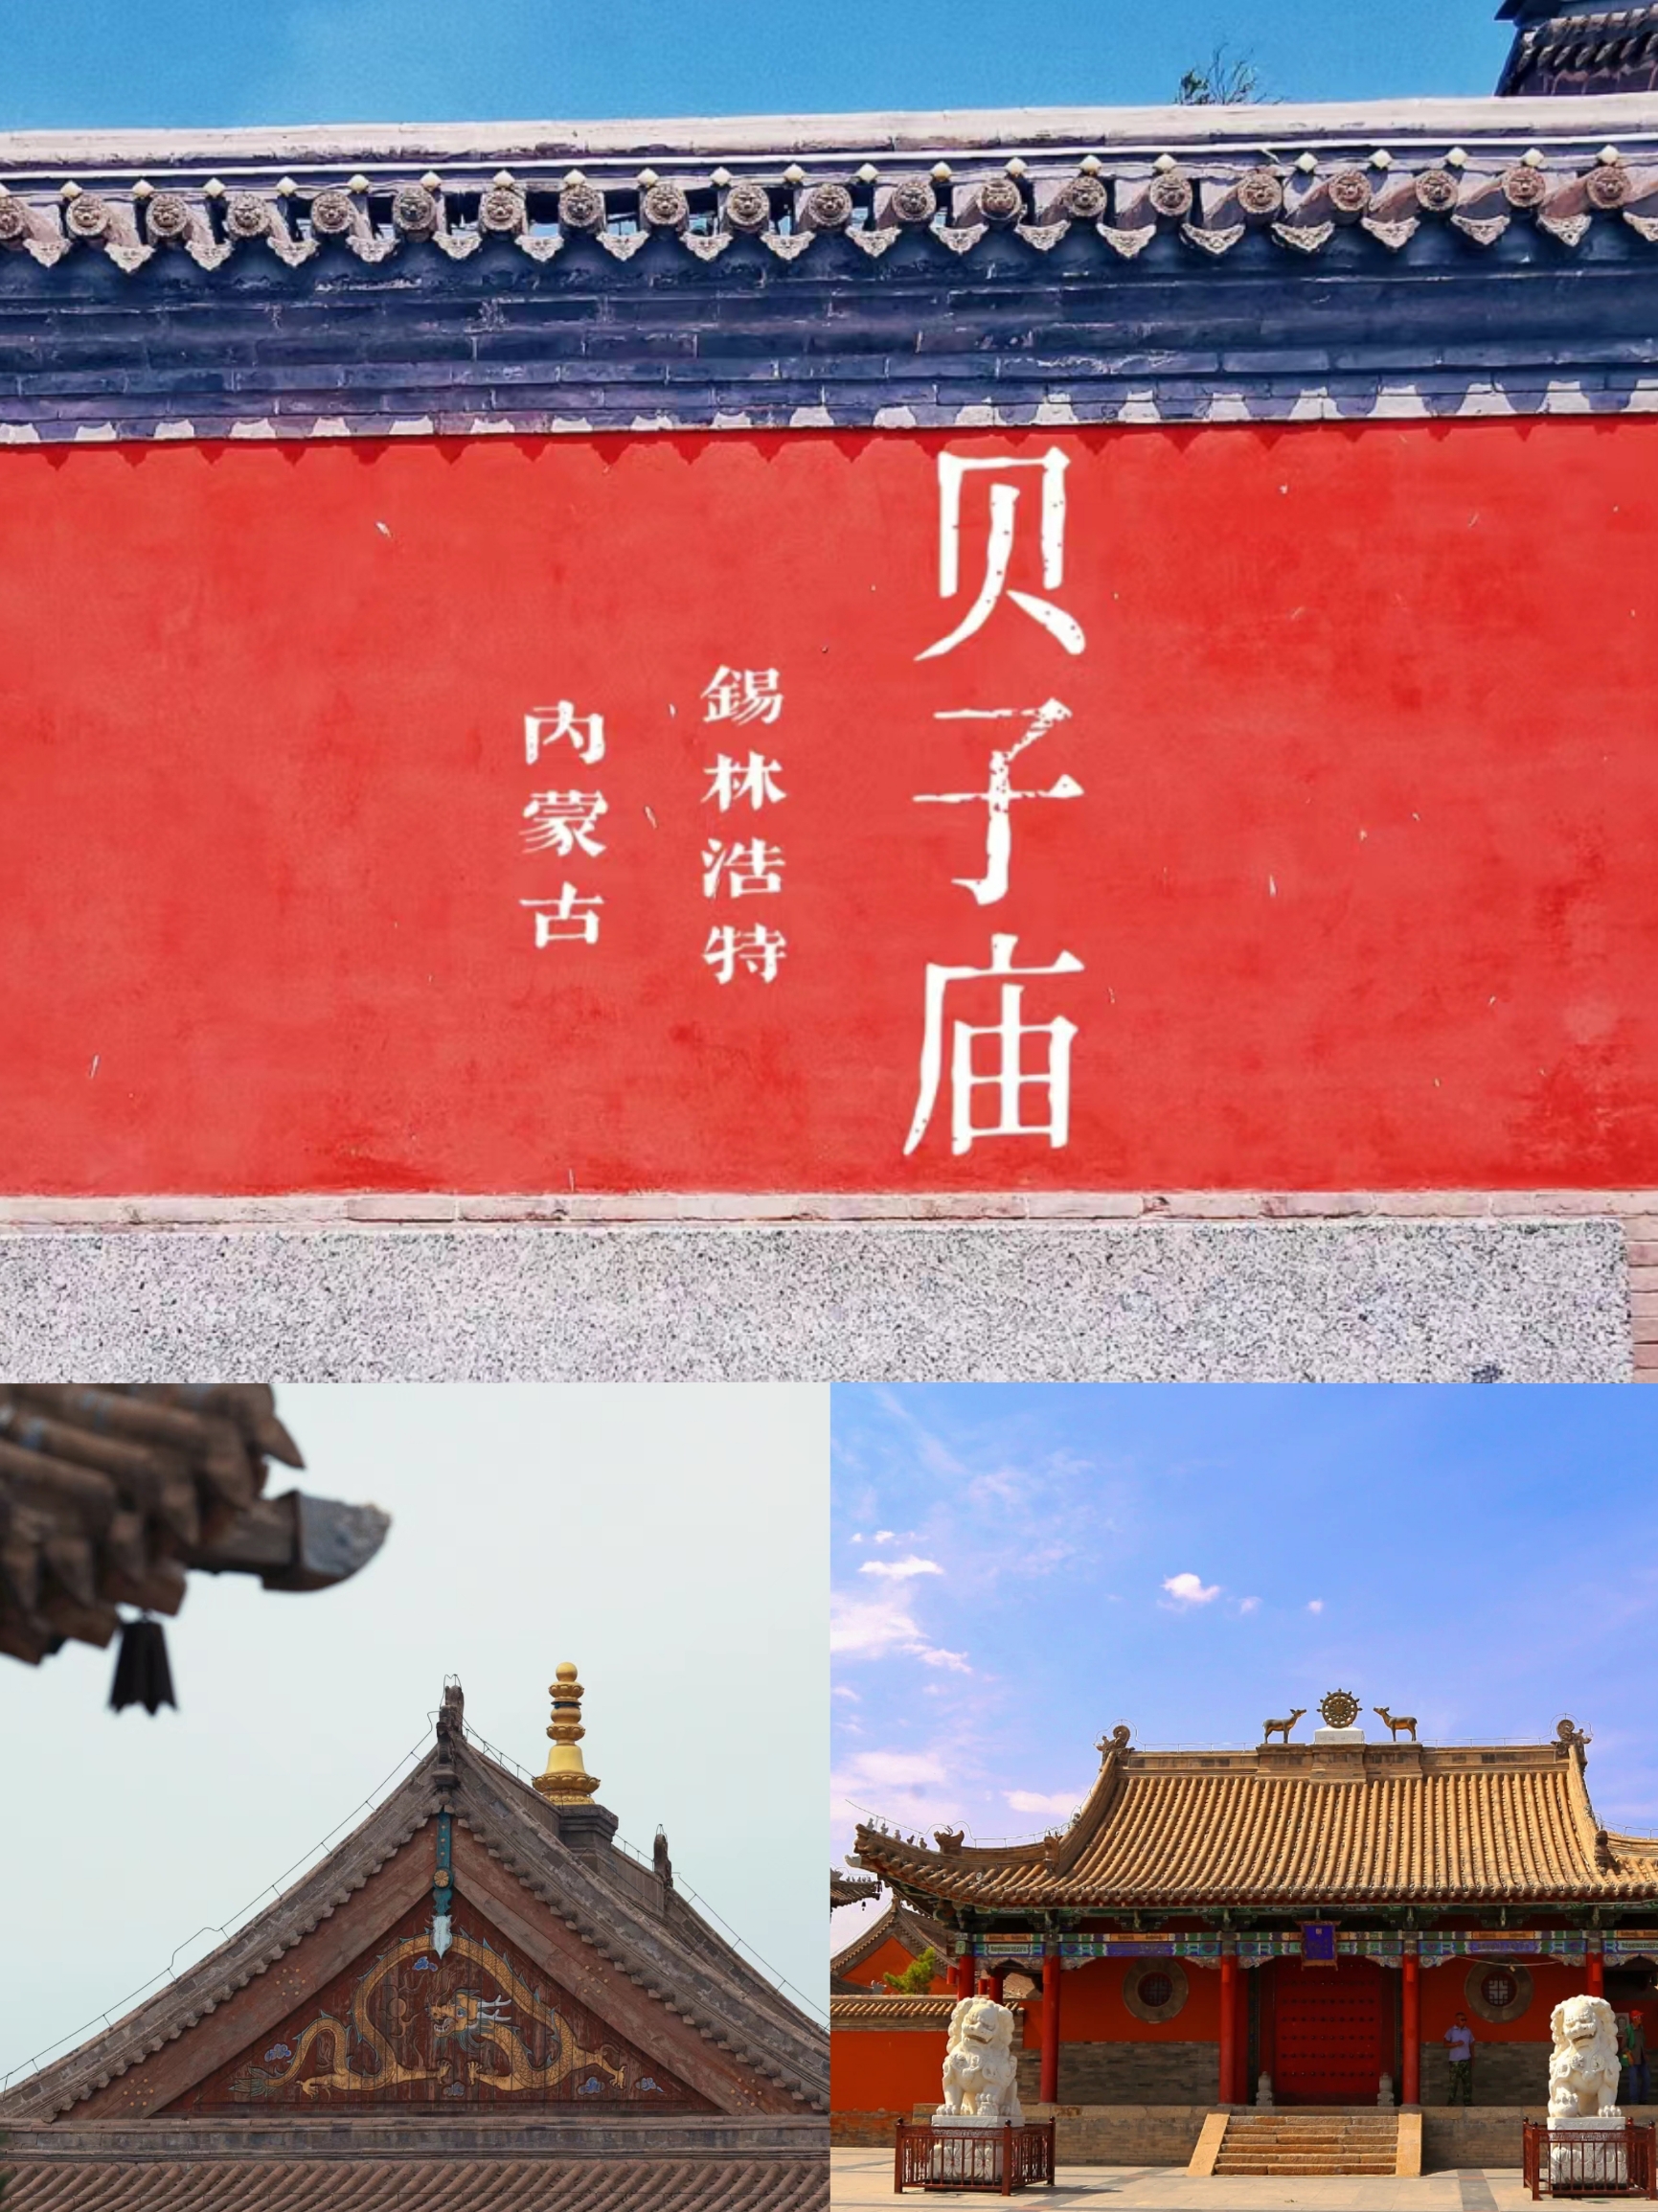 贝子庙/藏传佛教圣地与内蒙古文化瑰宝